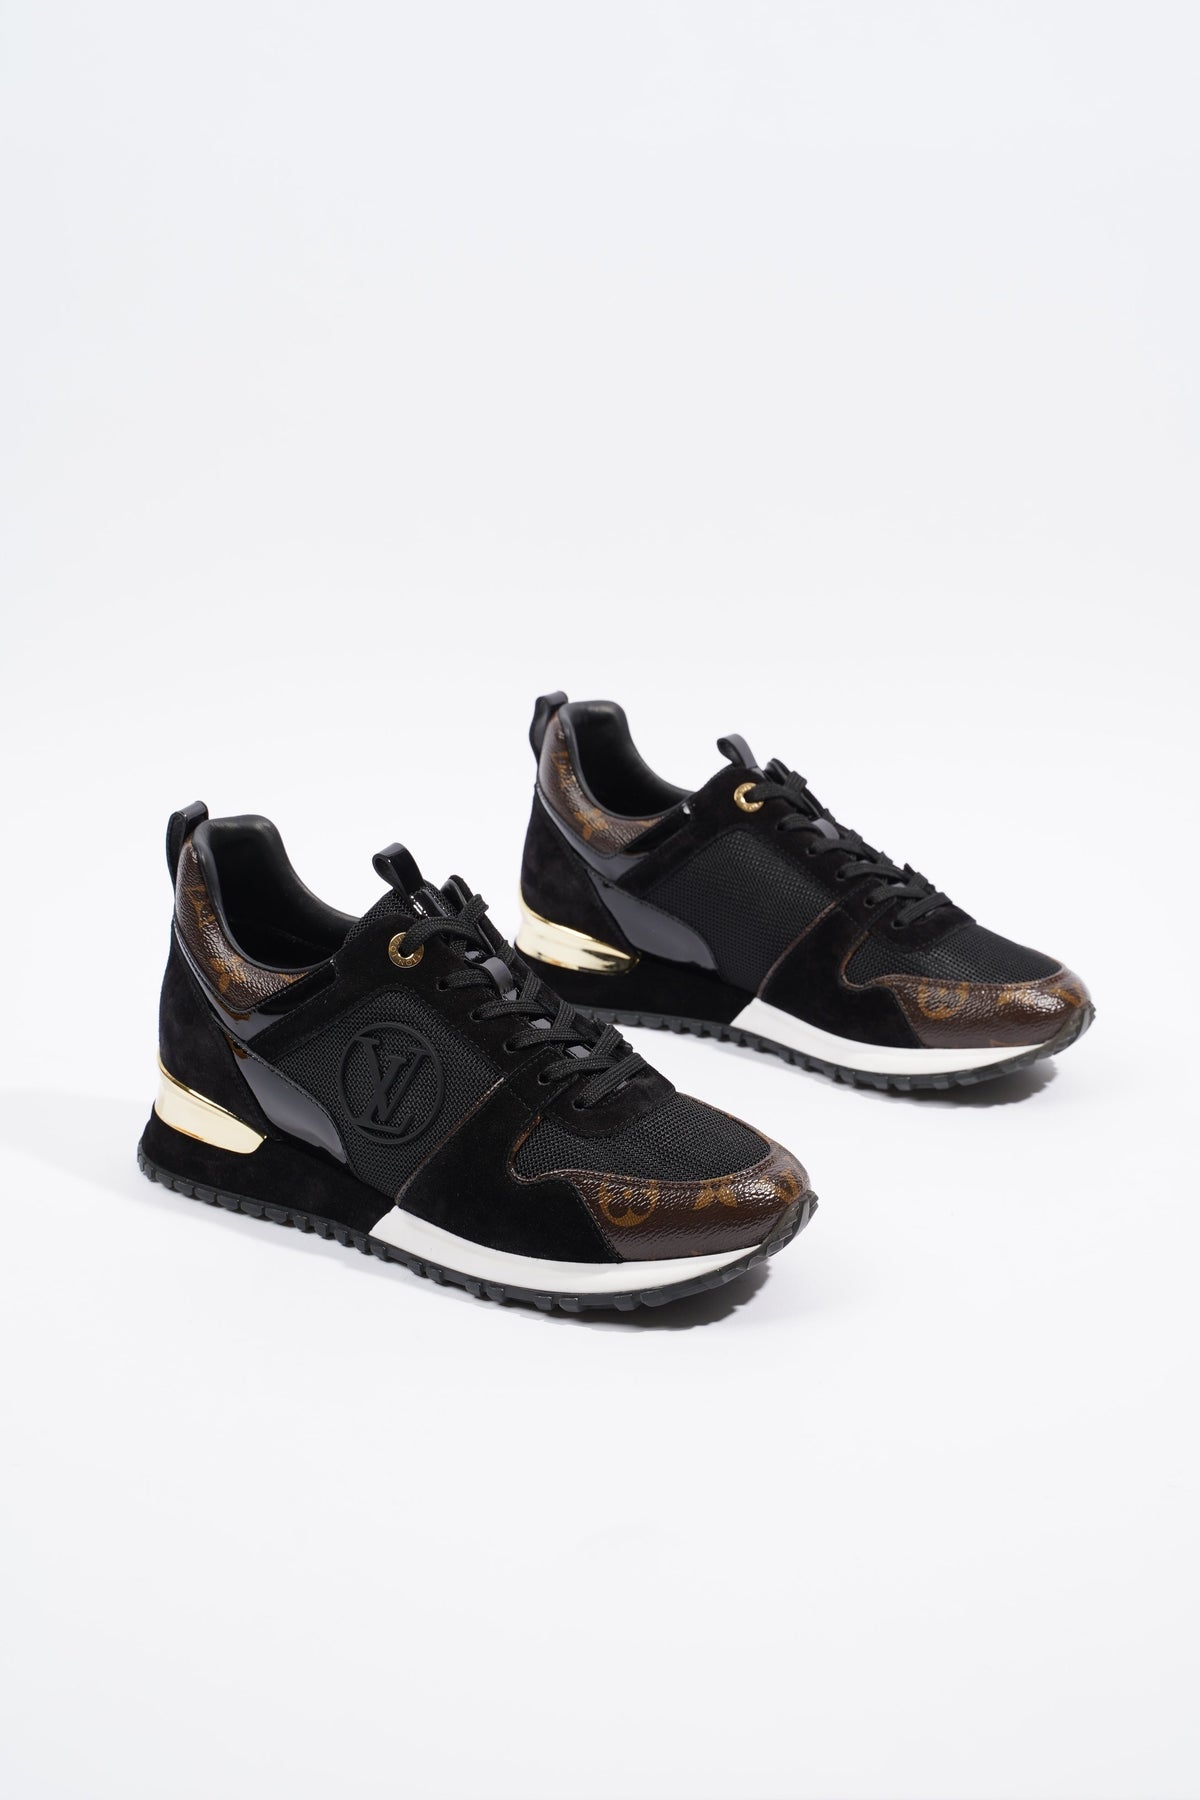 Louis Vuitton Run Away Sneaker BLACK. Size 38.5